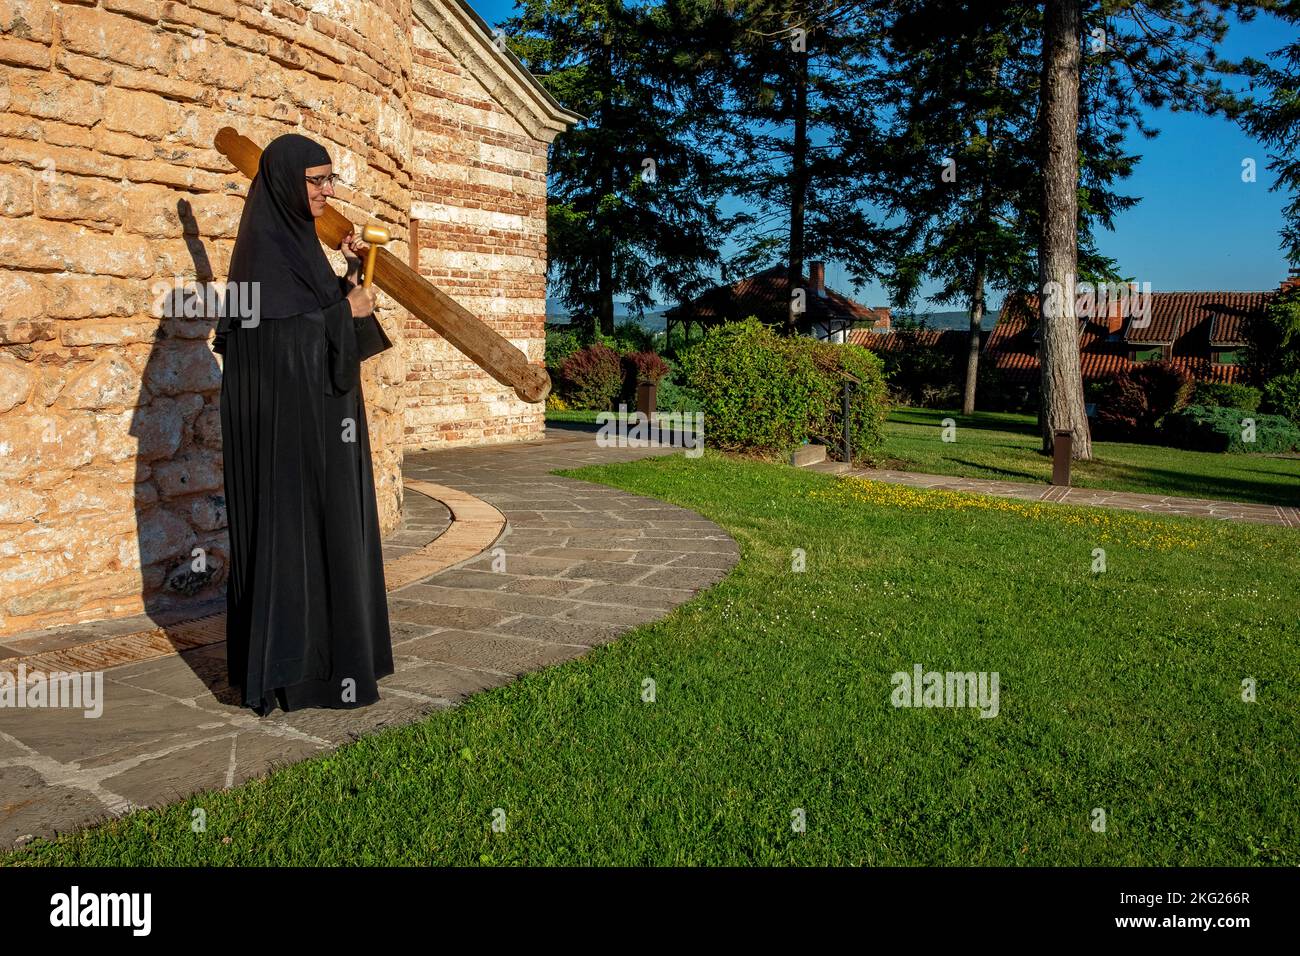 Orthodoxes Kloster Zica in der Nähe von Kraljevo, Serbien. Nonne ruft zu einer Morgenfeier Stockfoto